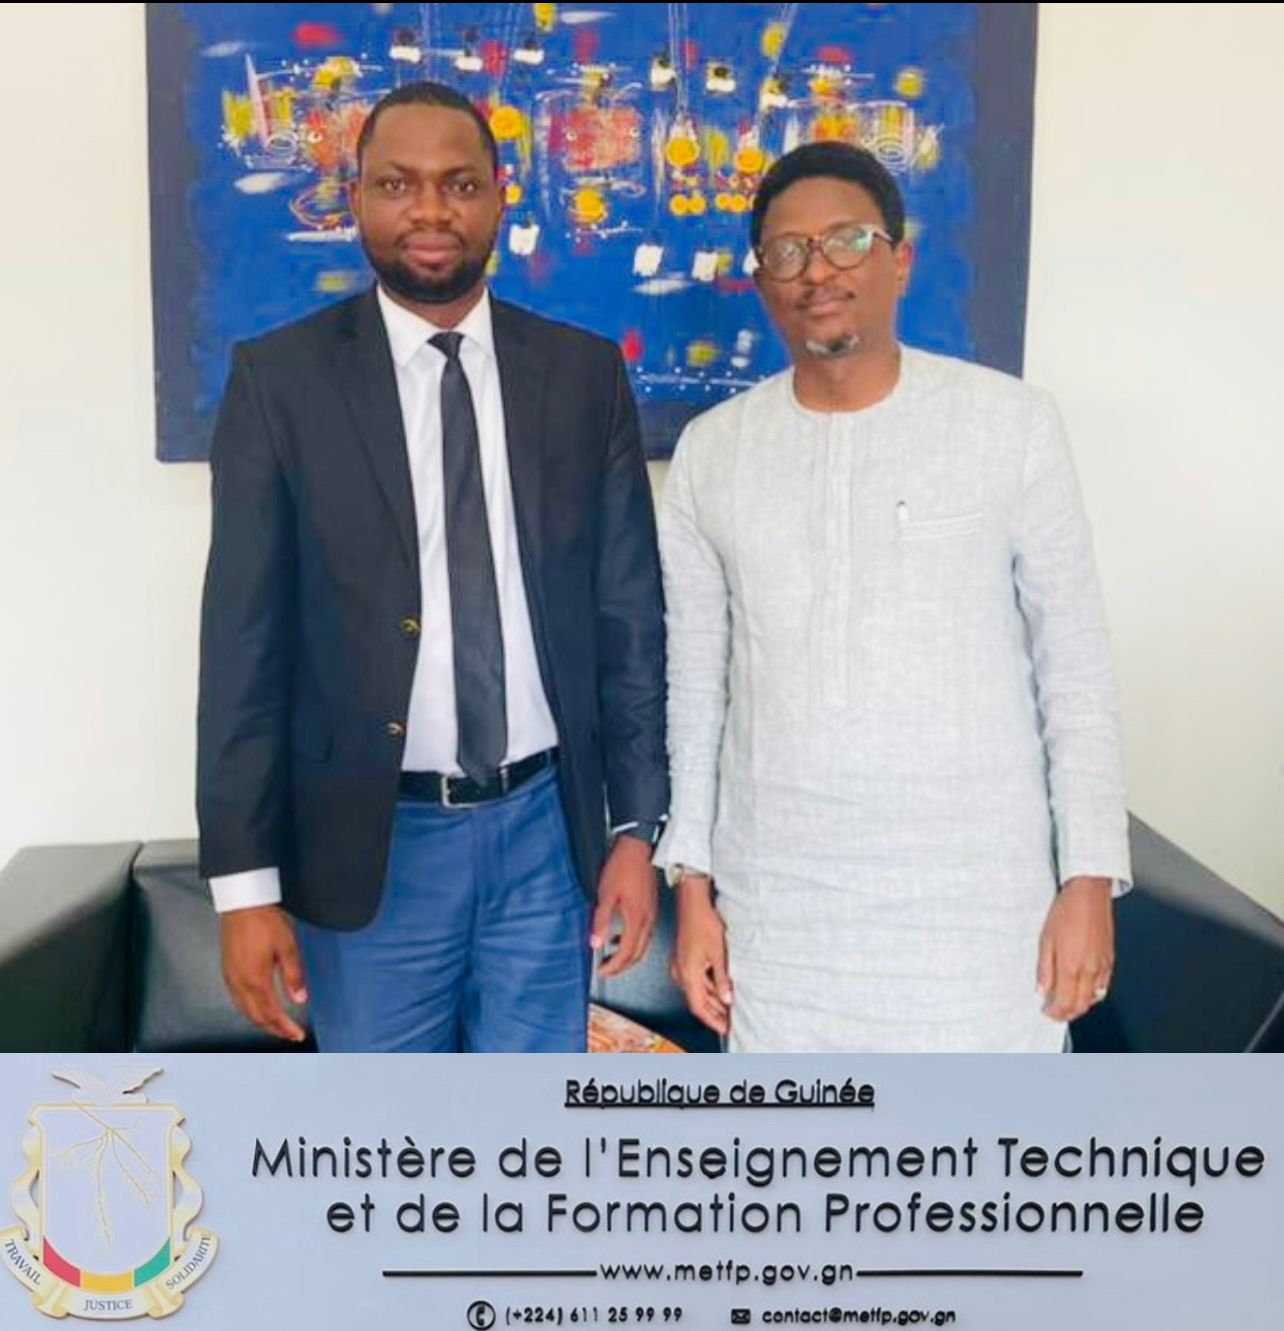 You are currently viewing Audience avec le Ministre de l’Enseignement technique et de la Formation professionnelle de la République de Guinée.